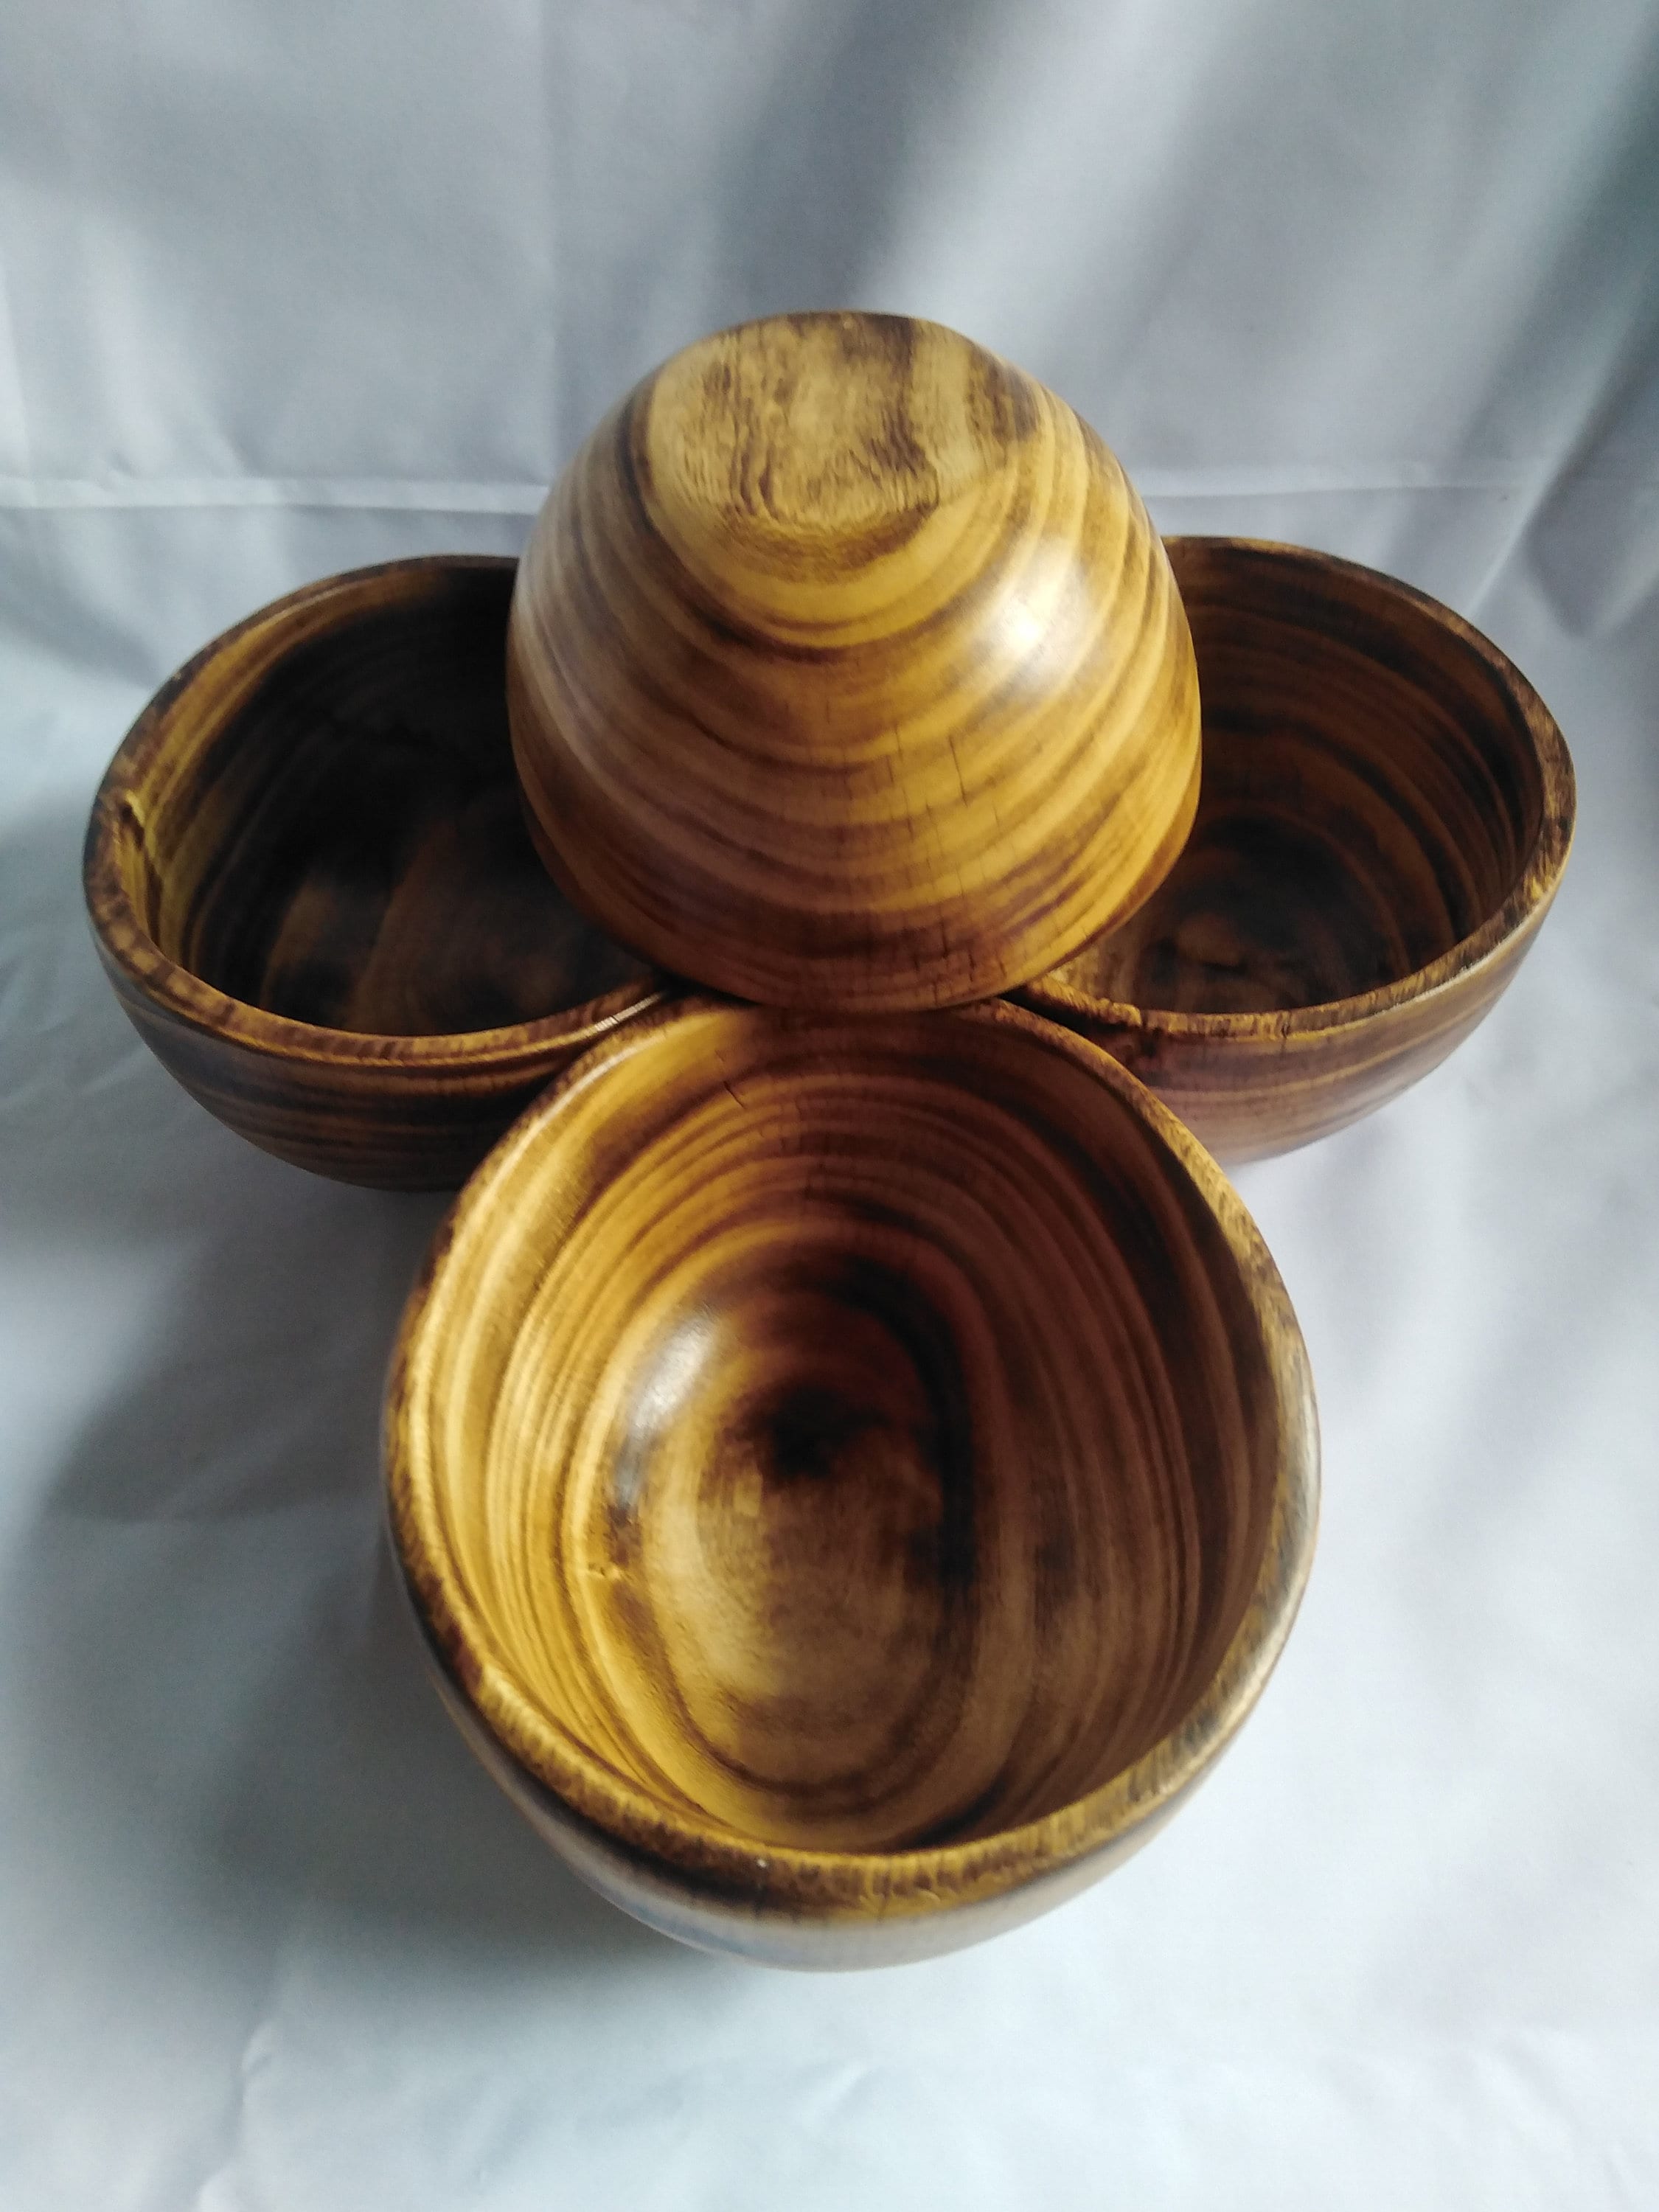 Wholesale & Bulk Bowl Set with Lids